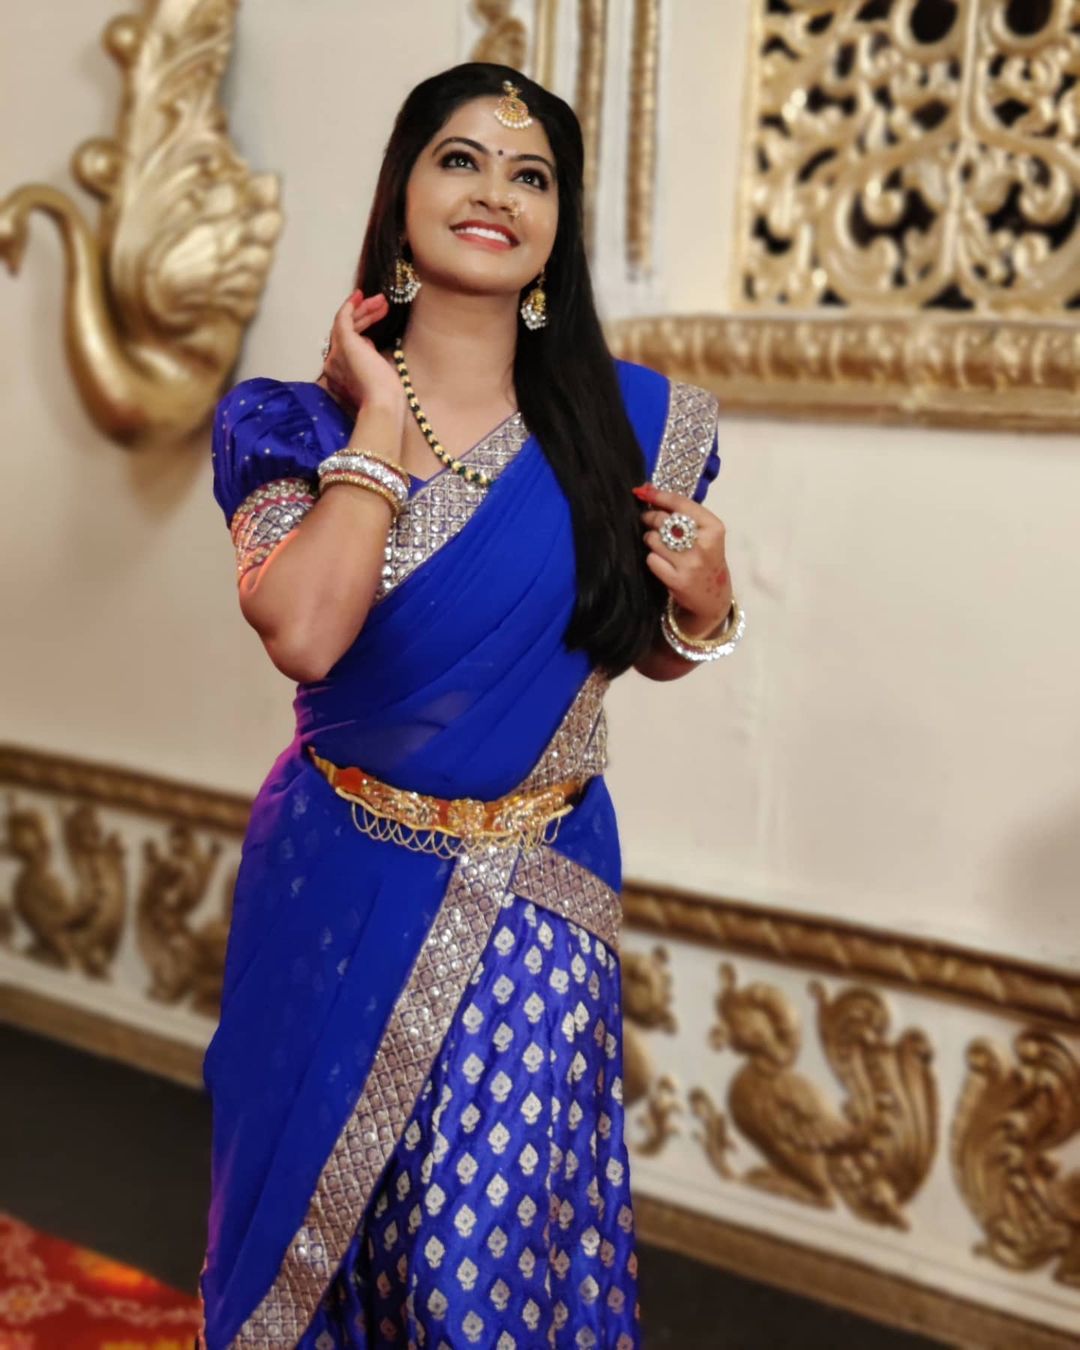  நடிகை ரச்சிதா மகாலட்சுமி ( Image : Instagram @rachitha_mahalakshmi_official )